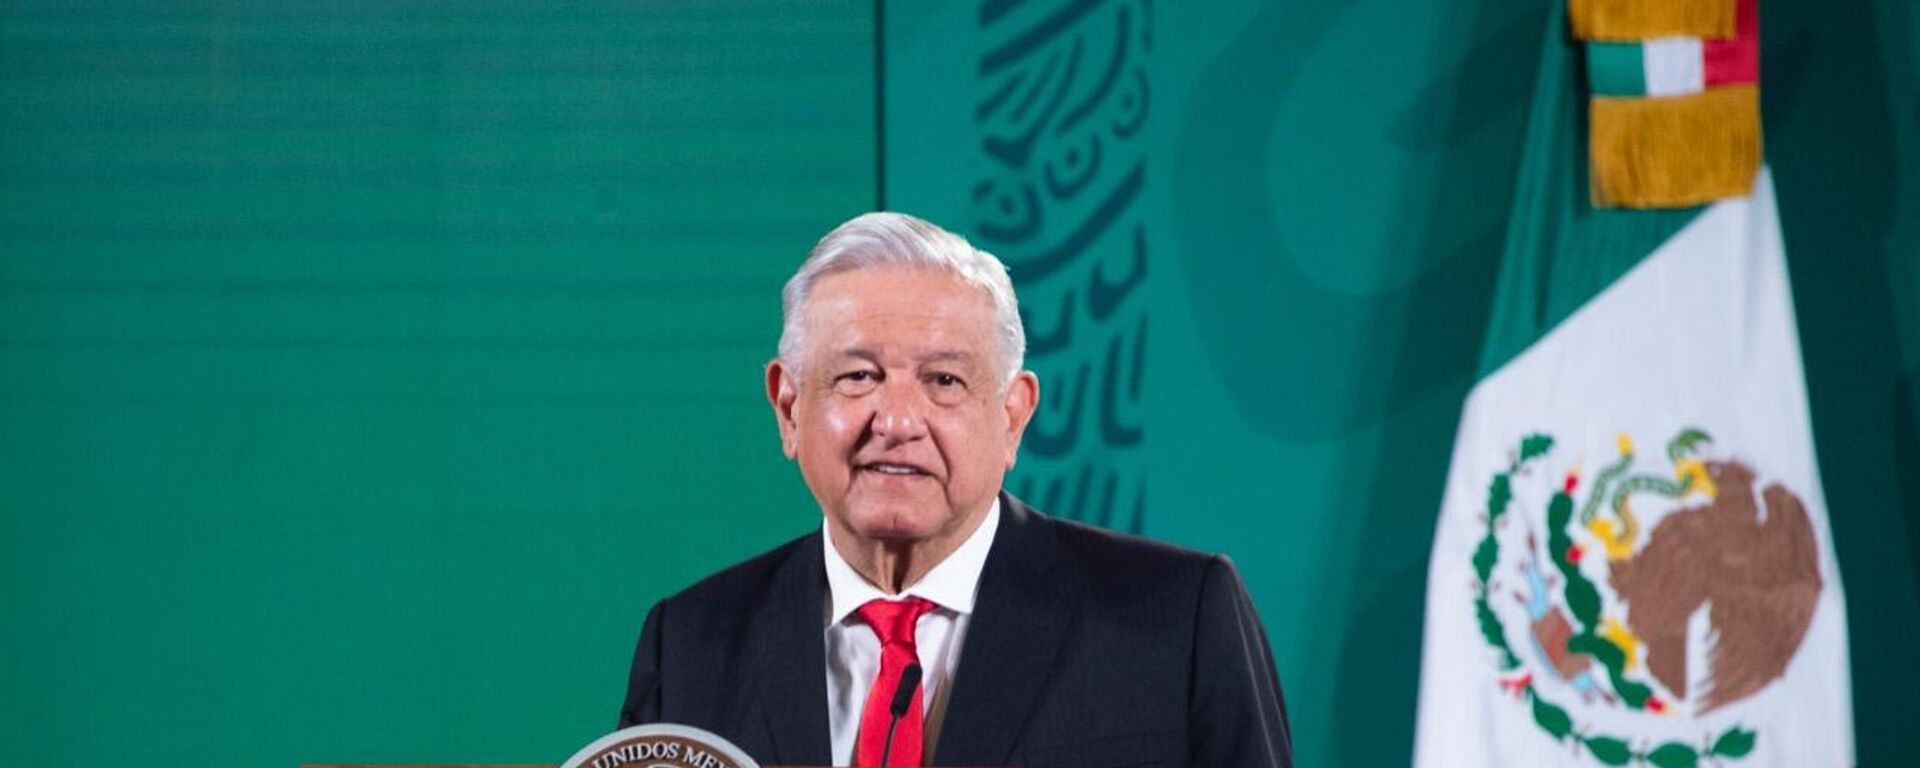 Andrés Manuel López Obrador, presidente de México - Sputnik Mundo, 1920, 29.09.2021